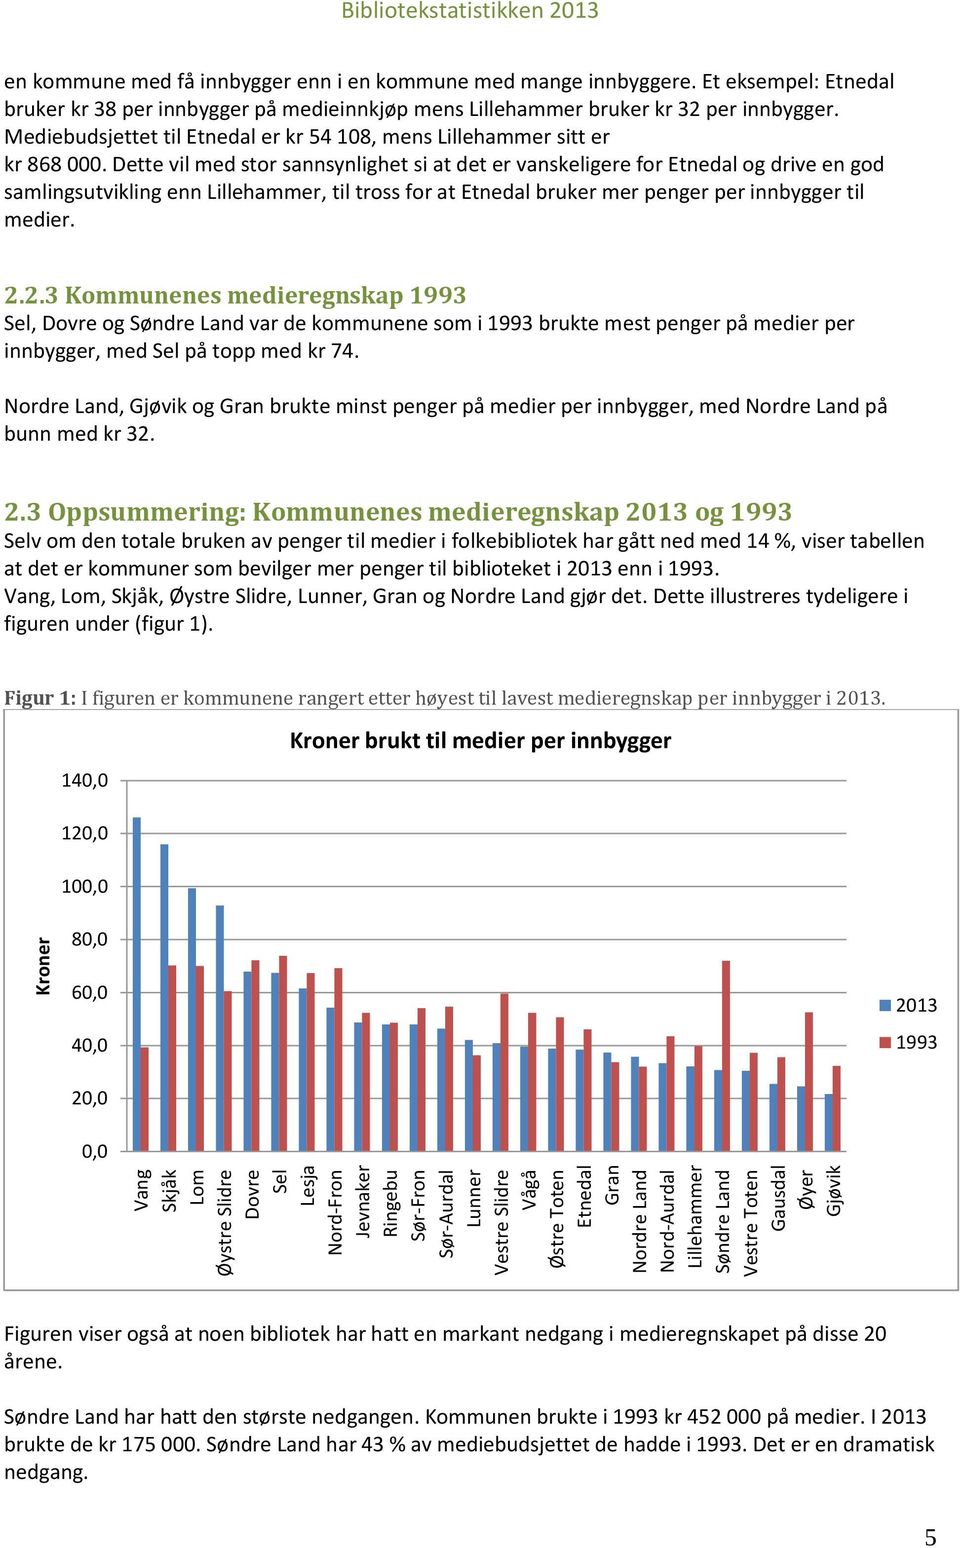 Et eksempel: Etnedal bruker kr 38 per innbygger på medieinnkjøp mens Lillehammer bruker kr 32 per innbygger. Mediebudsjettet til Etnedal er kr 54 108, mens Lillehammer sitt er kr 868 000.